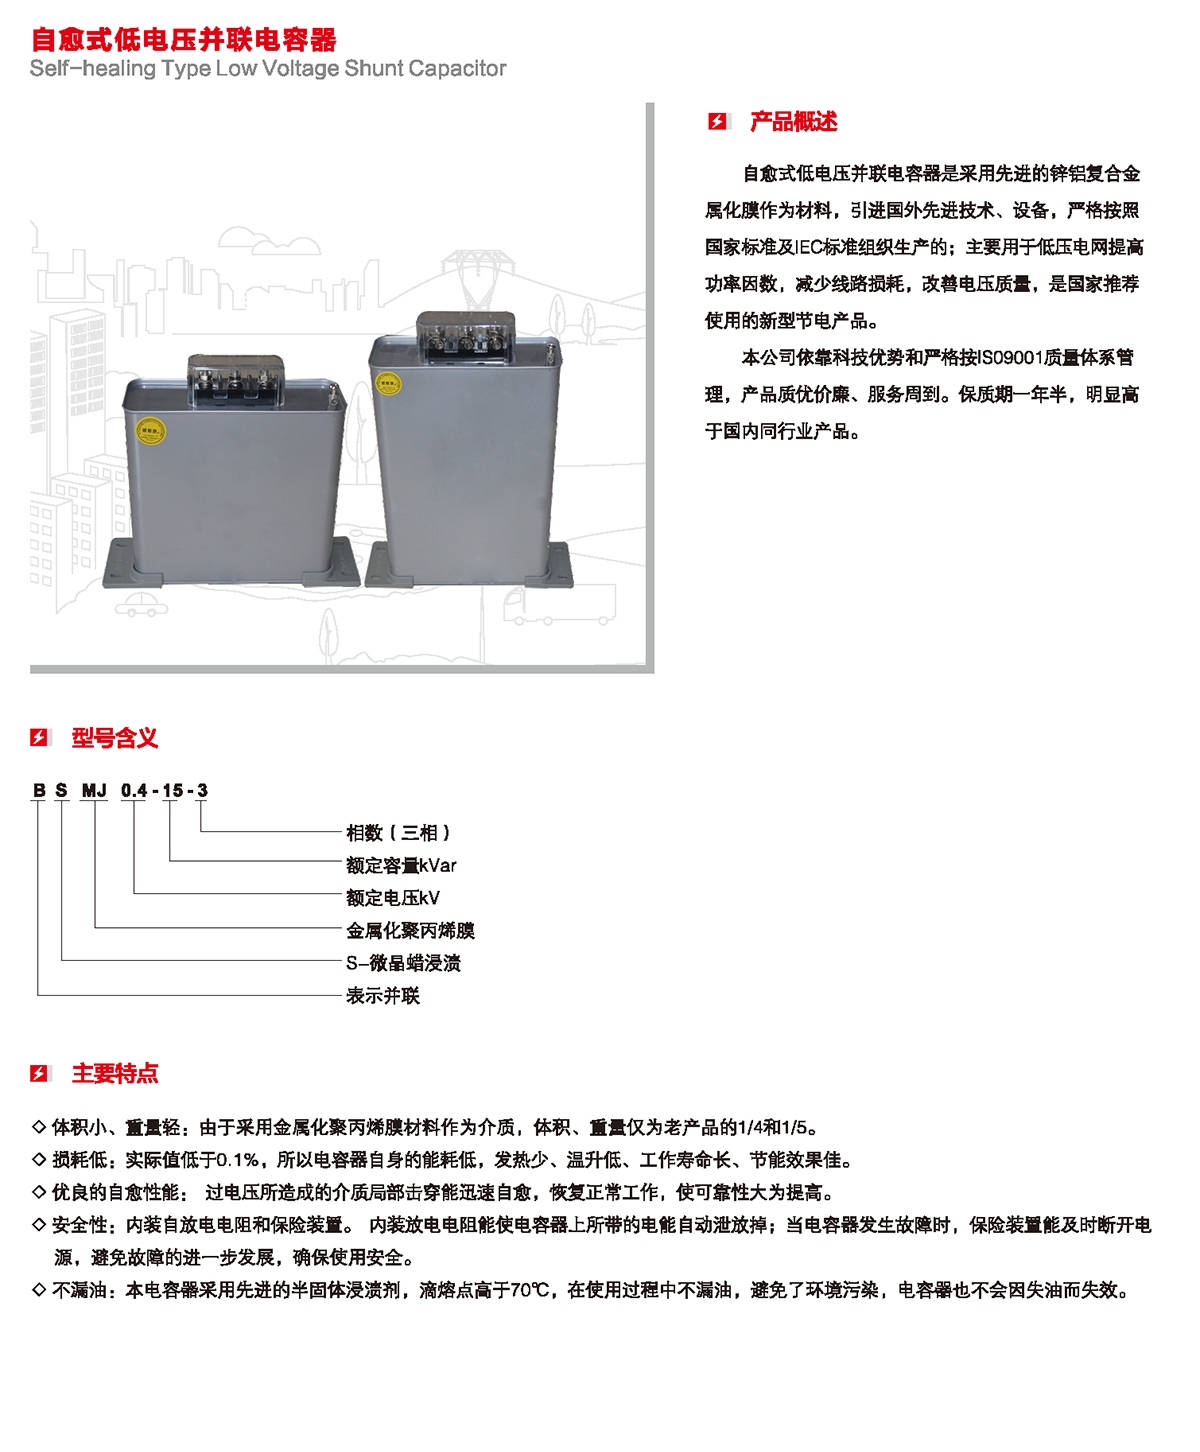 自愈式低電壓并聯電容器產品概述、型號含義、主要特點